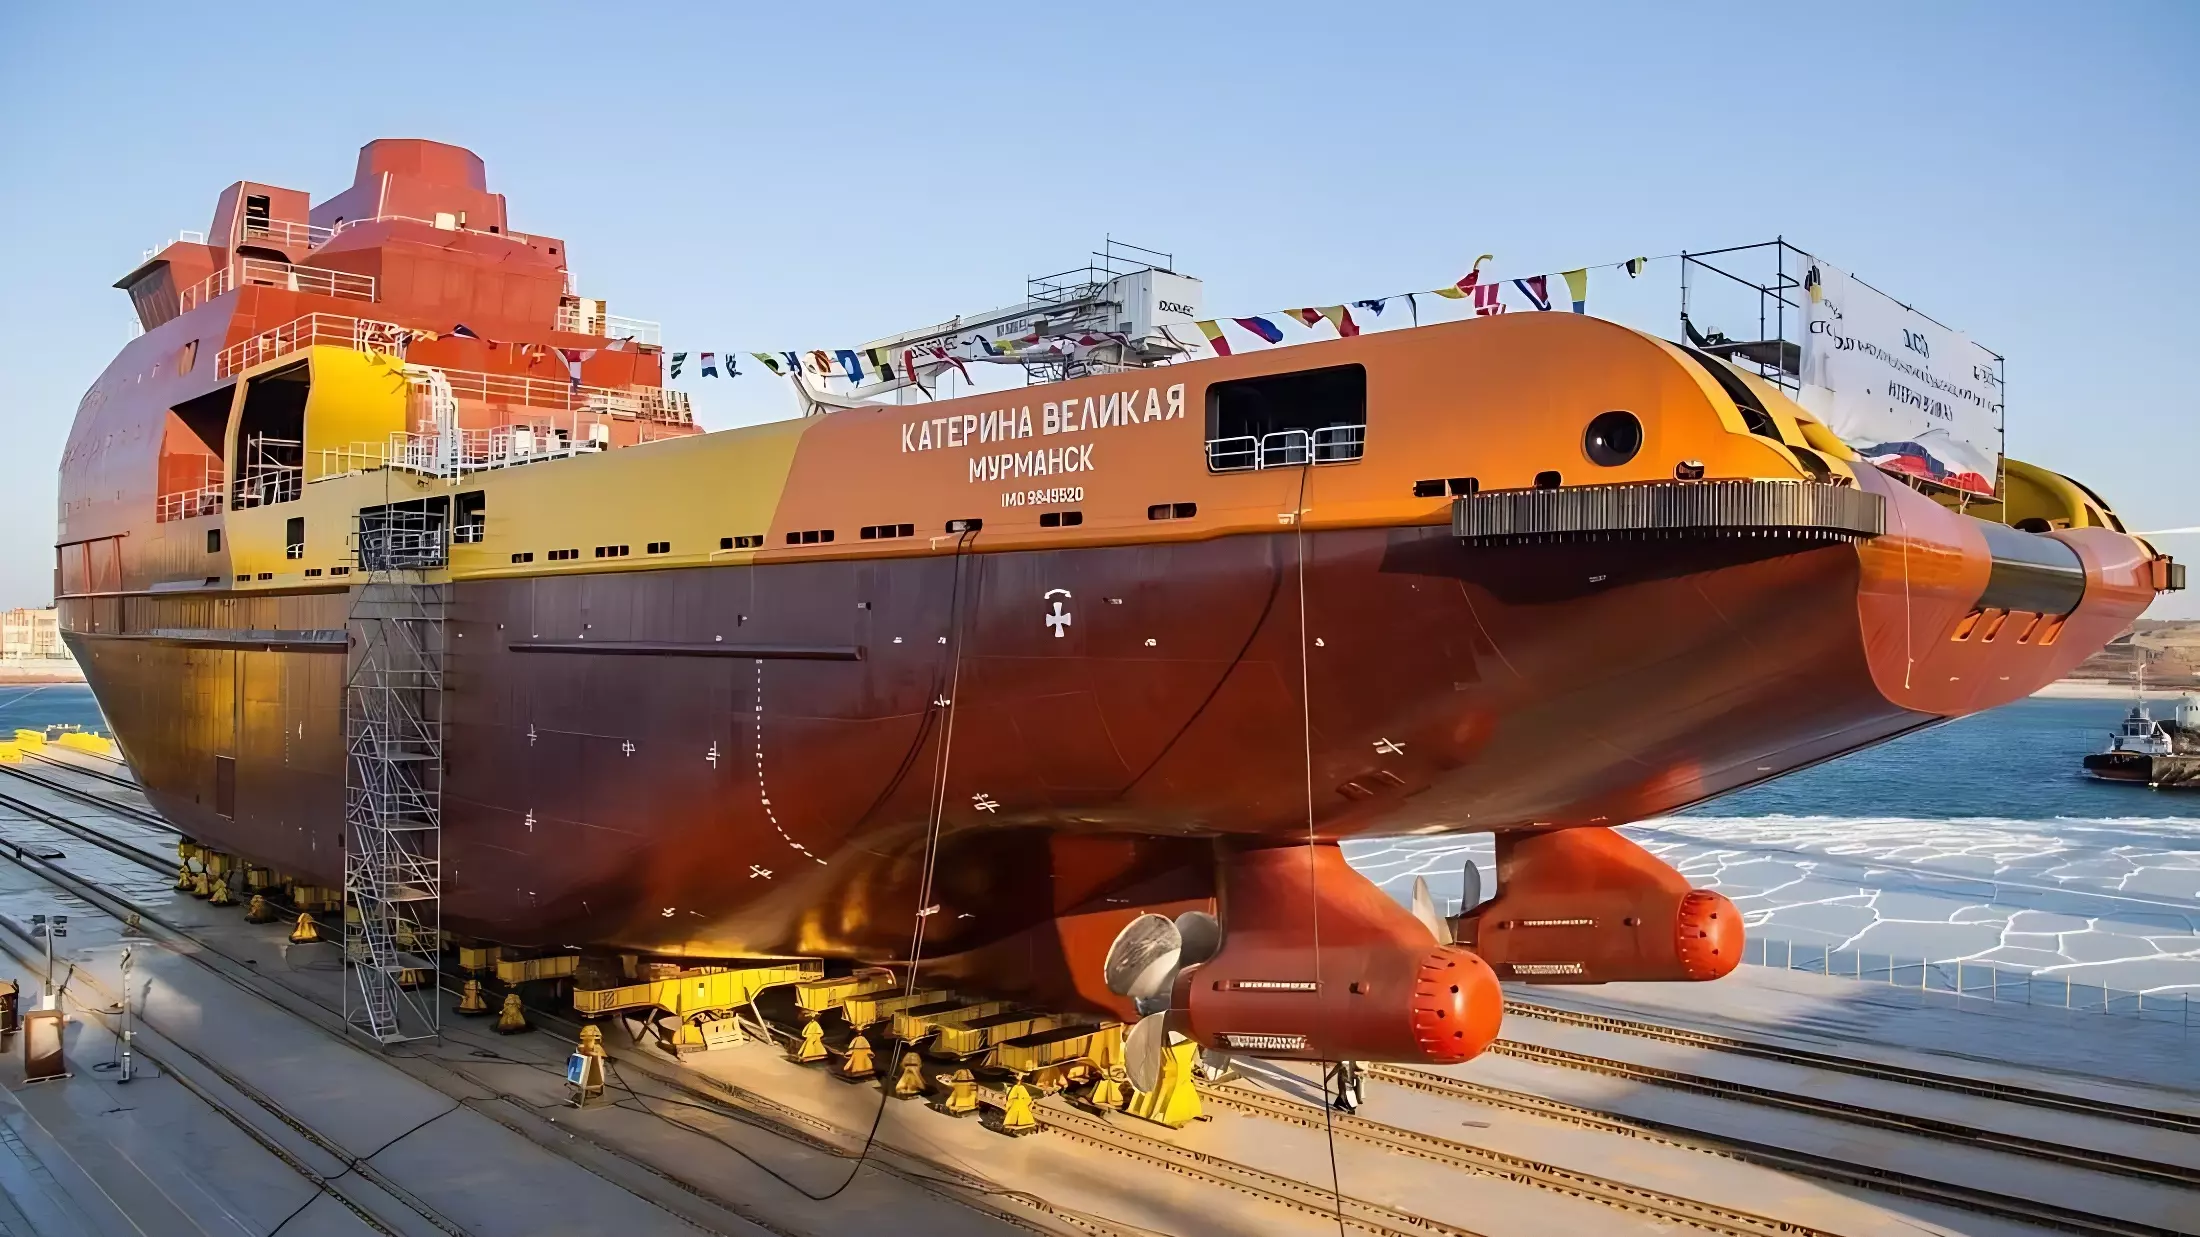 Во Владивостоке загорелось уникальное судно «Катерина Великая», есть жертвы